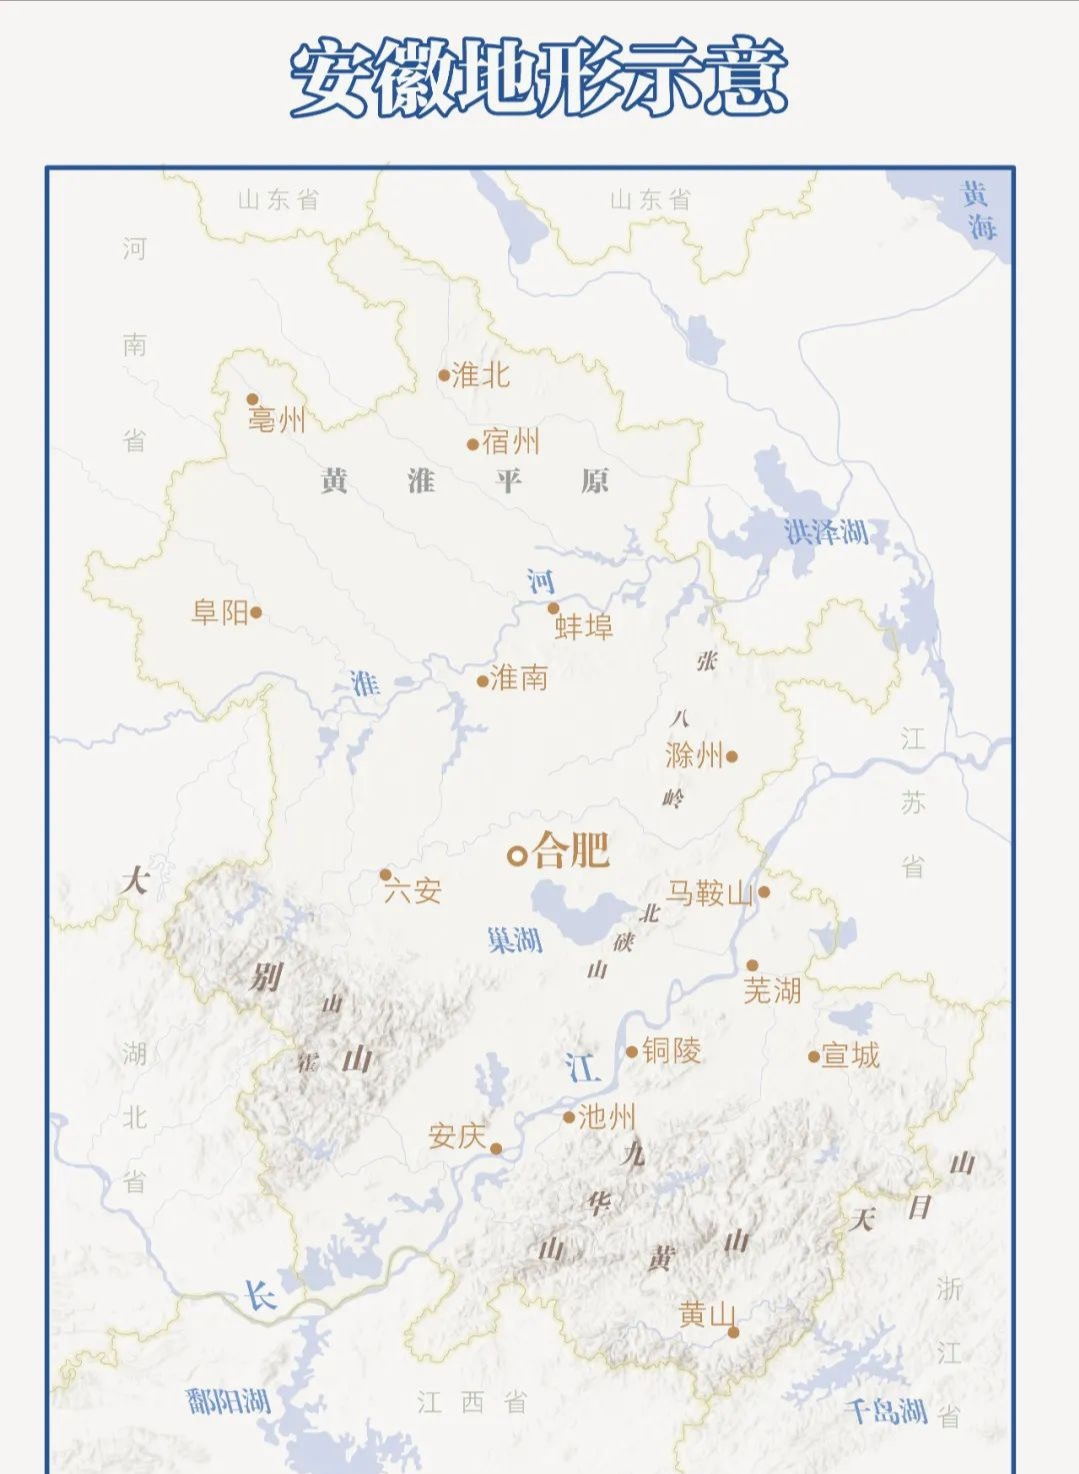 衛星石化怎么樣 對衛星石化公司的評價(jià)和經(jīng)營(yíng)情況分析